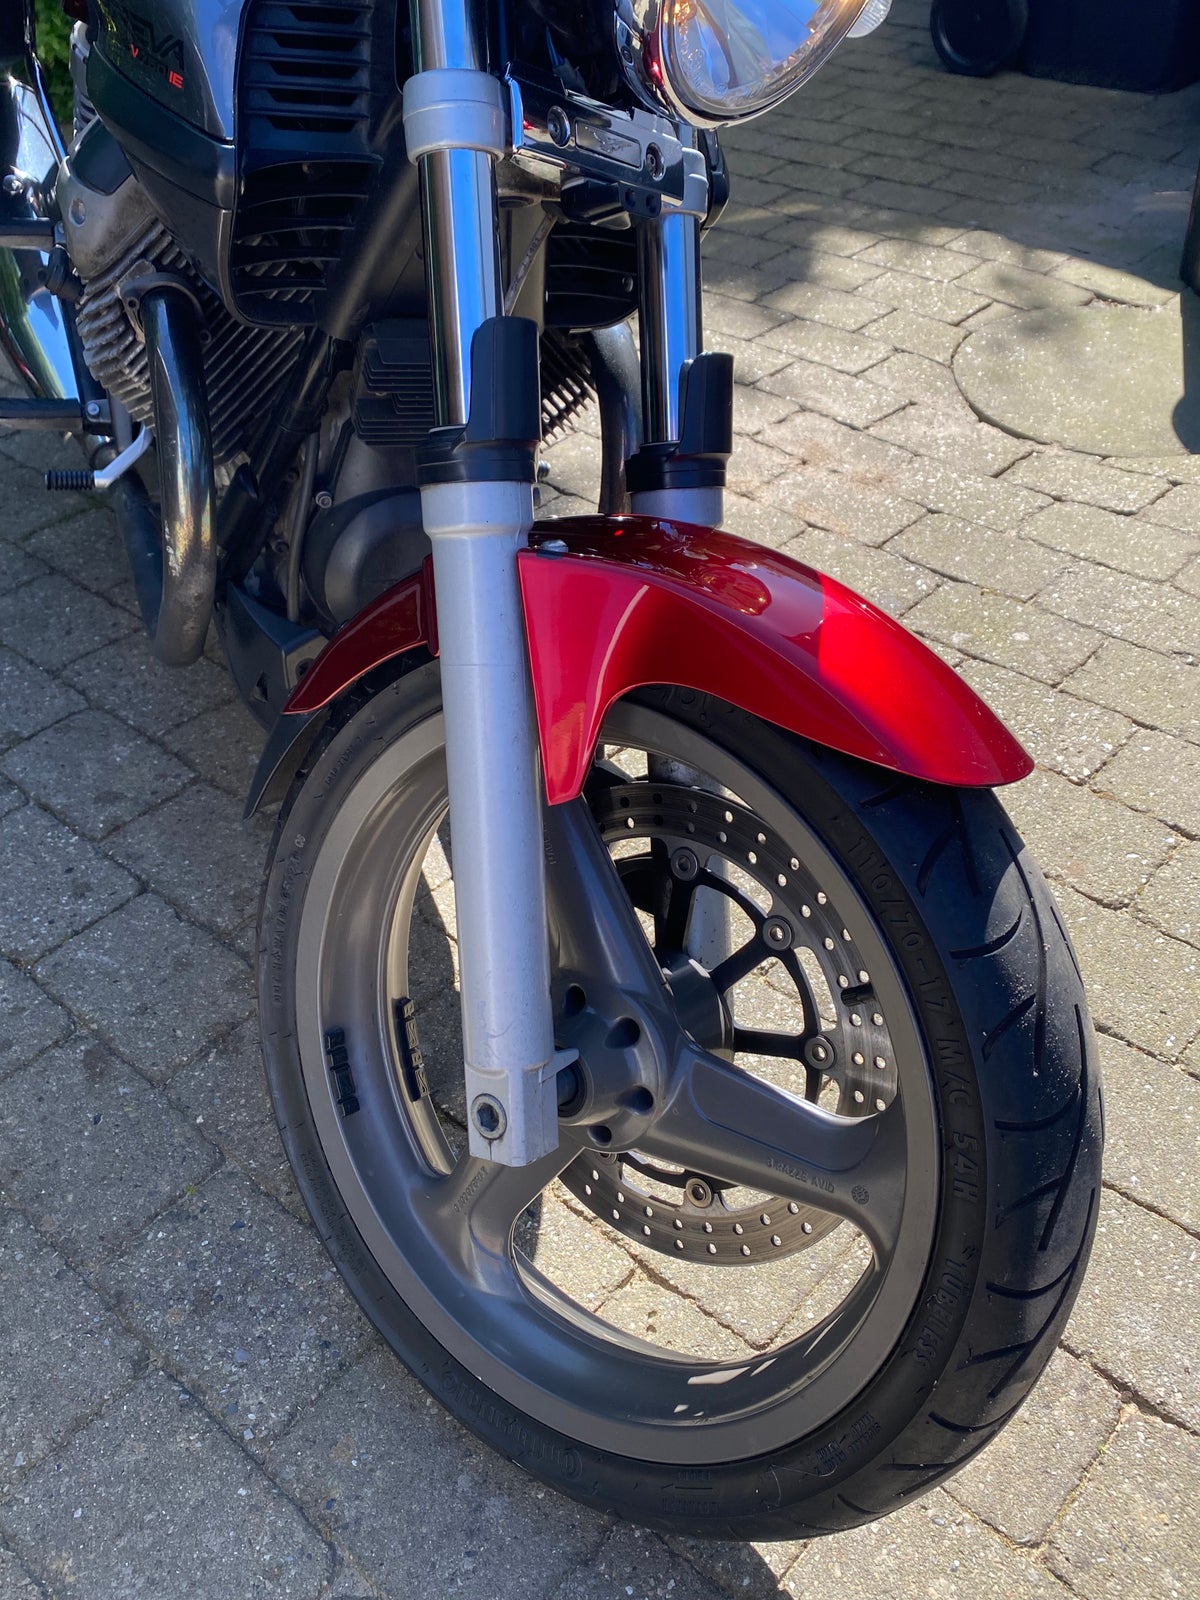 Moto Guzzi, Moto Guzzi Breva 750, 750 ccm